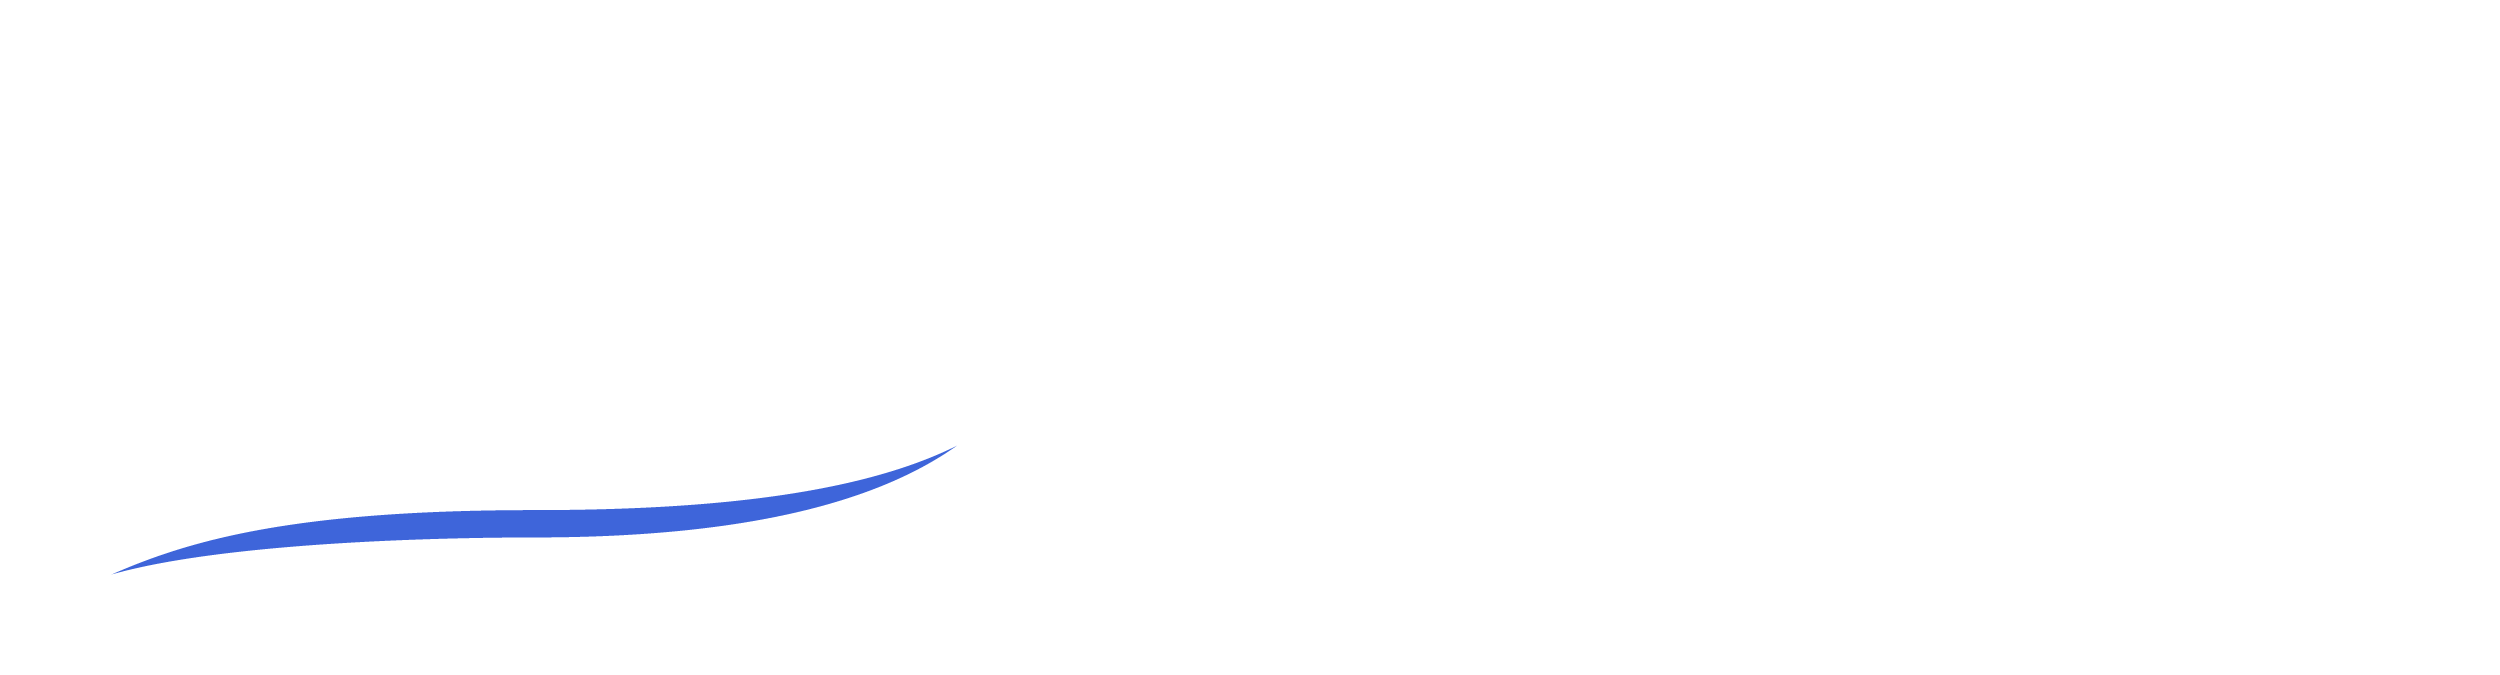 Lakeside StraightBacks